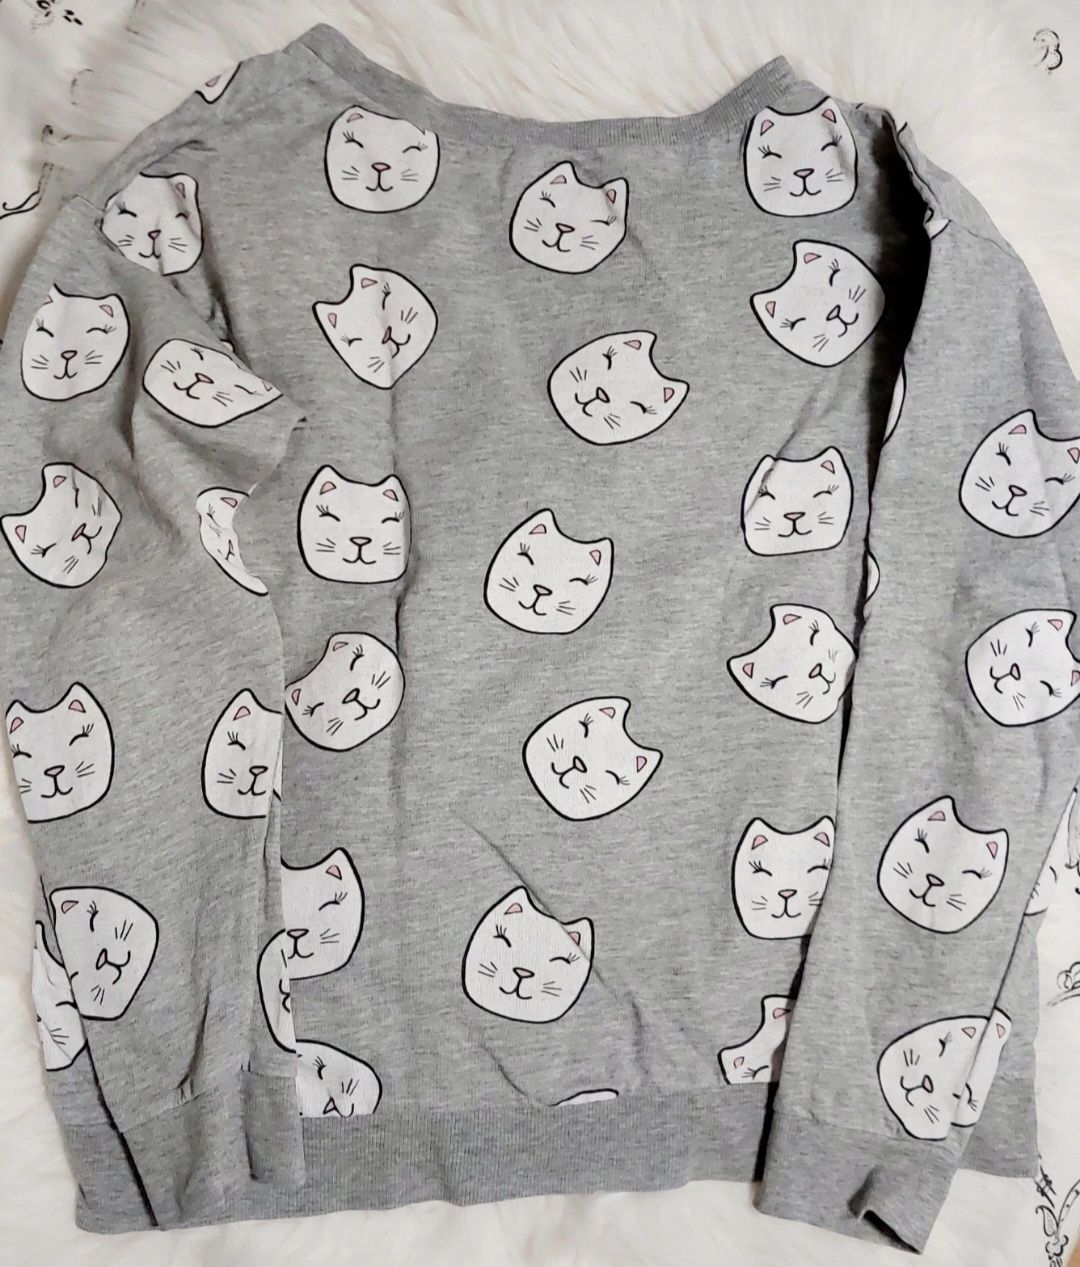 Bluza młodzieżowa  szara w kotki koty  S XS 158 164